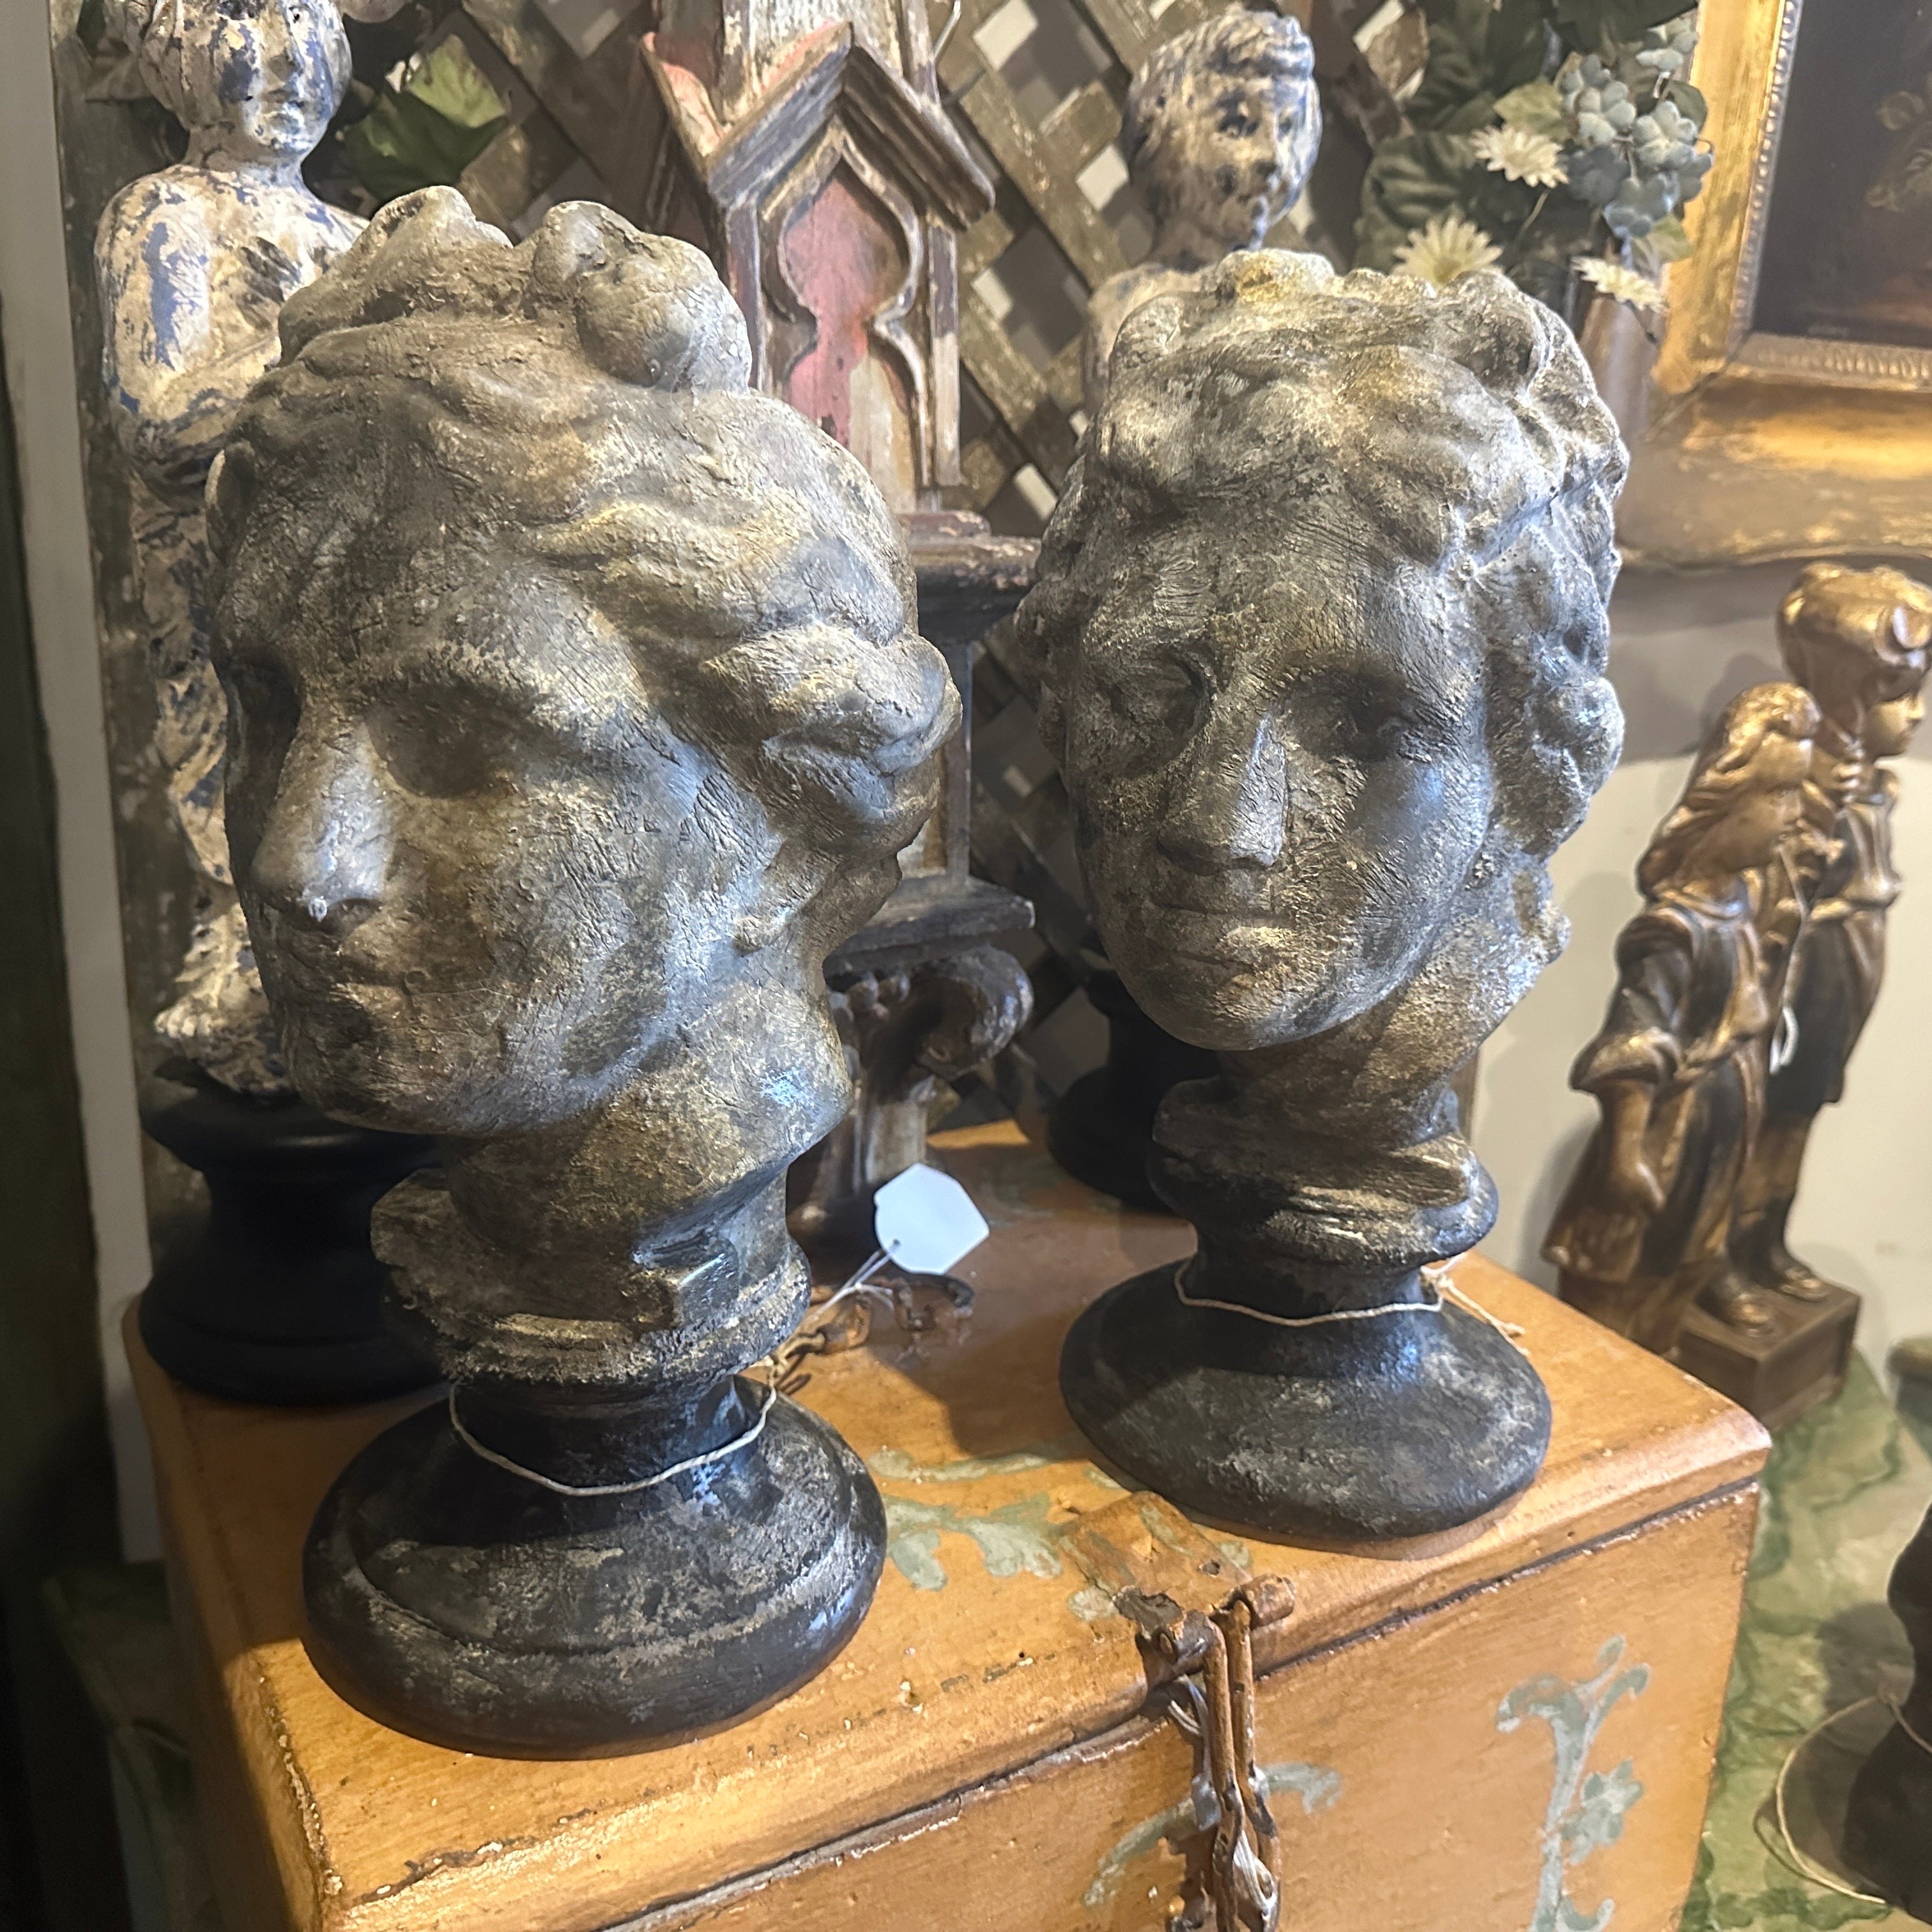 Deux bustes en plâtre d'Apollo et de Vener dei Medici provenant d'une Gipsoteca dans une académie des beaux-arts sicilienne. Les plâtres étaient patinés de différentes manières, celui-ci a été réalisé avec du noir et du gris pour ce résultat